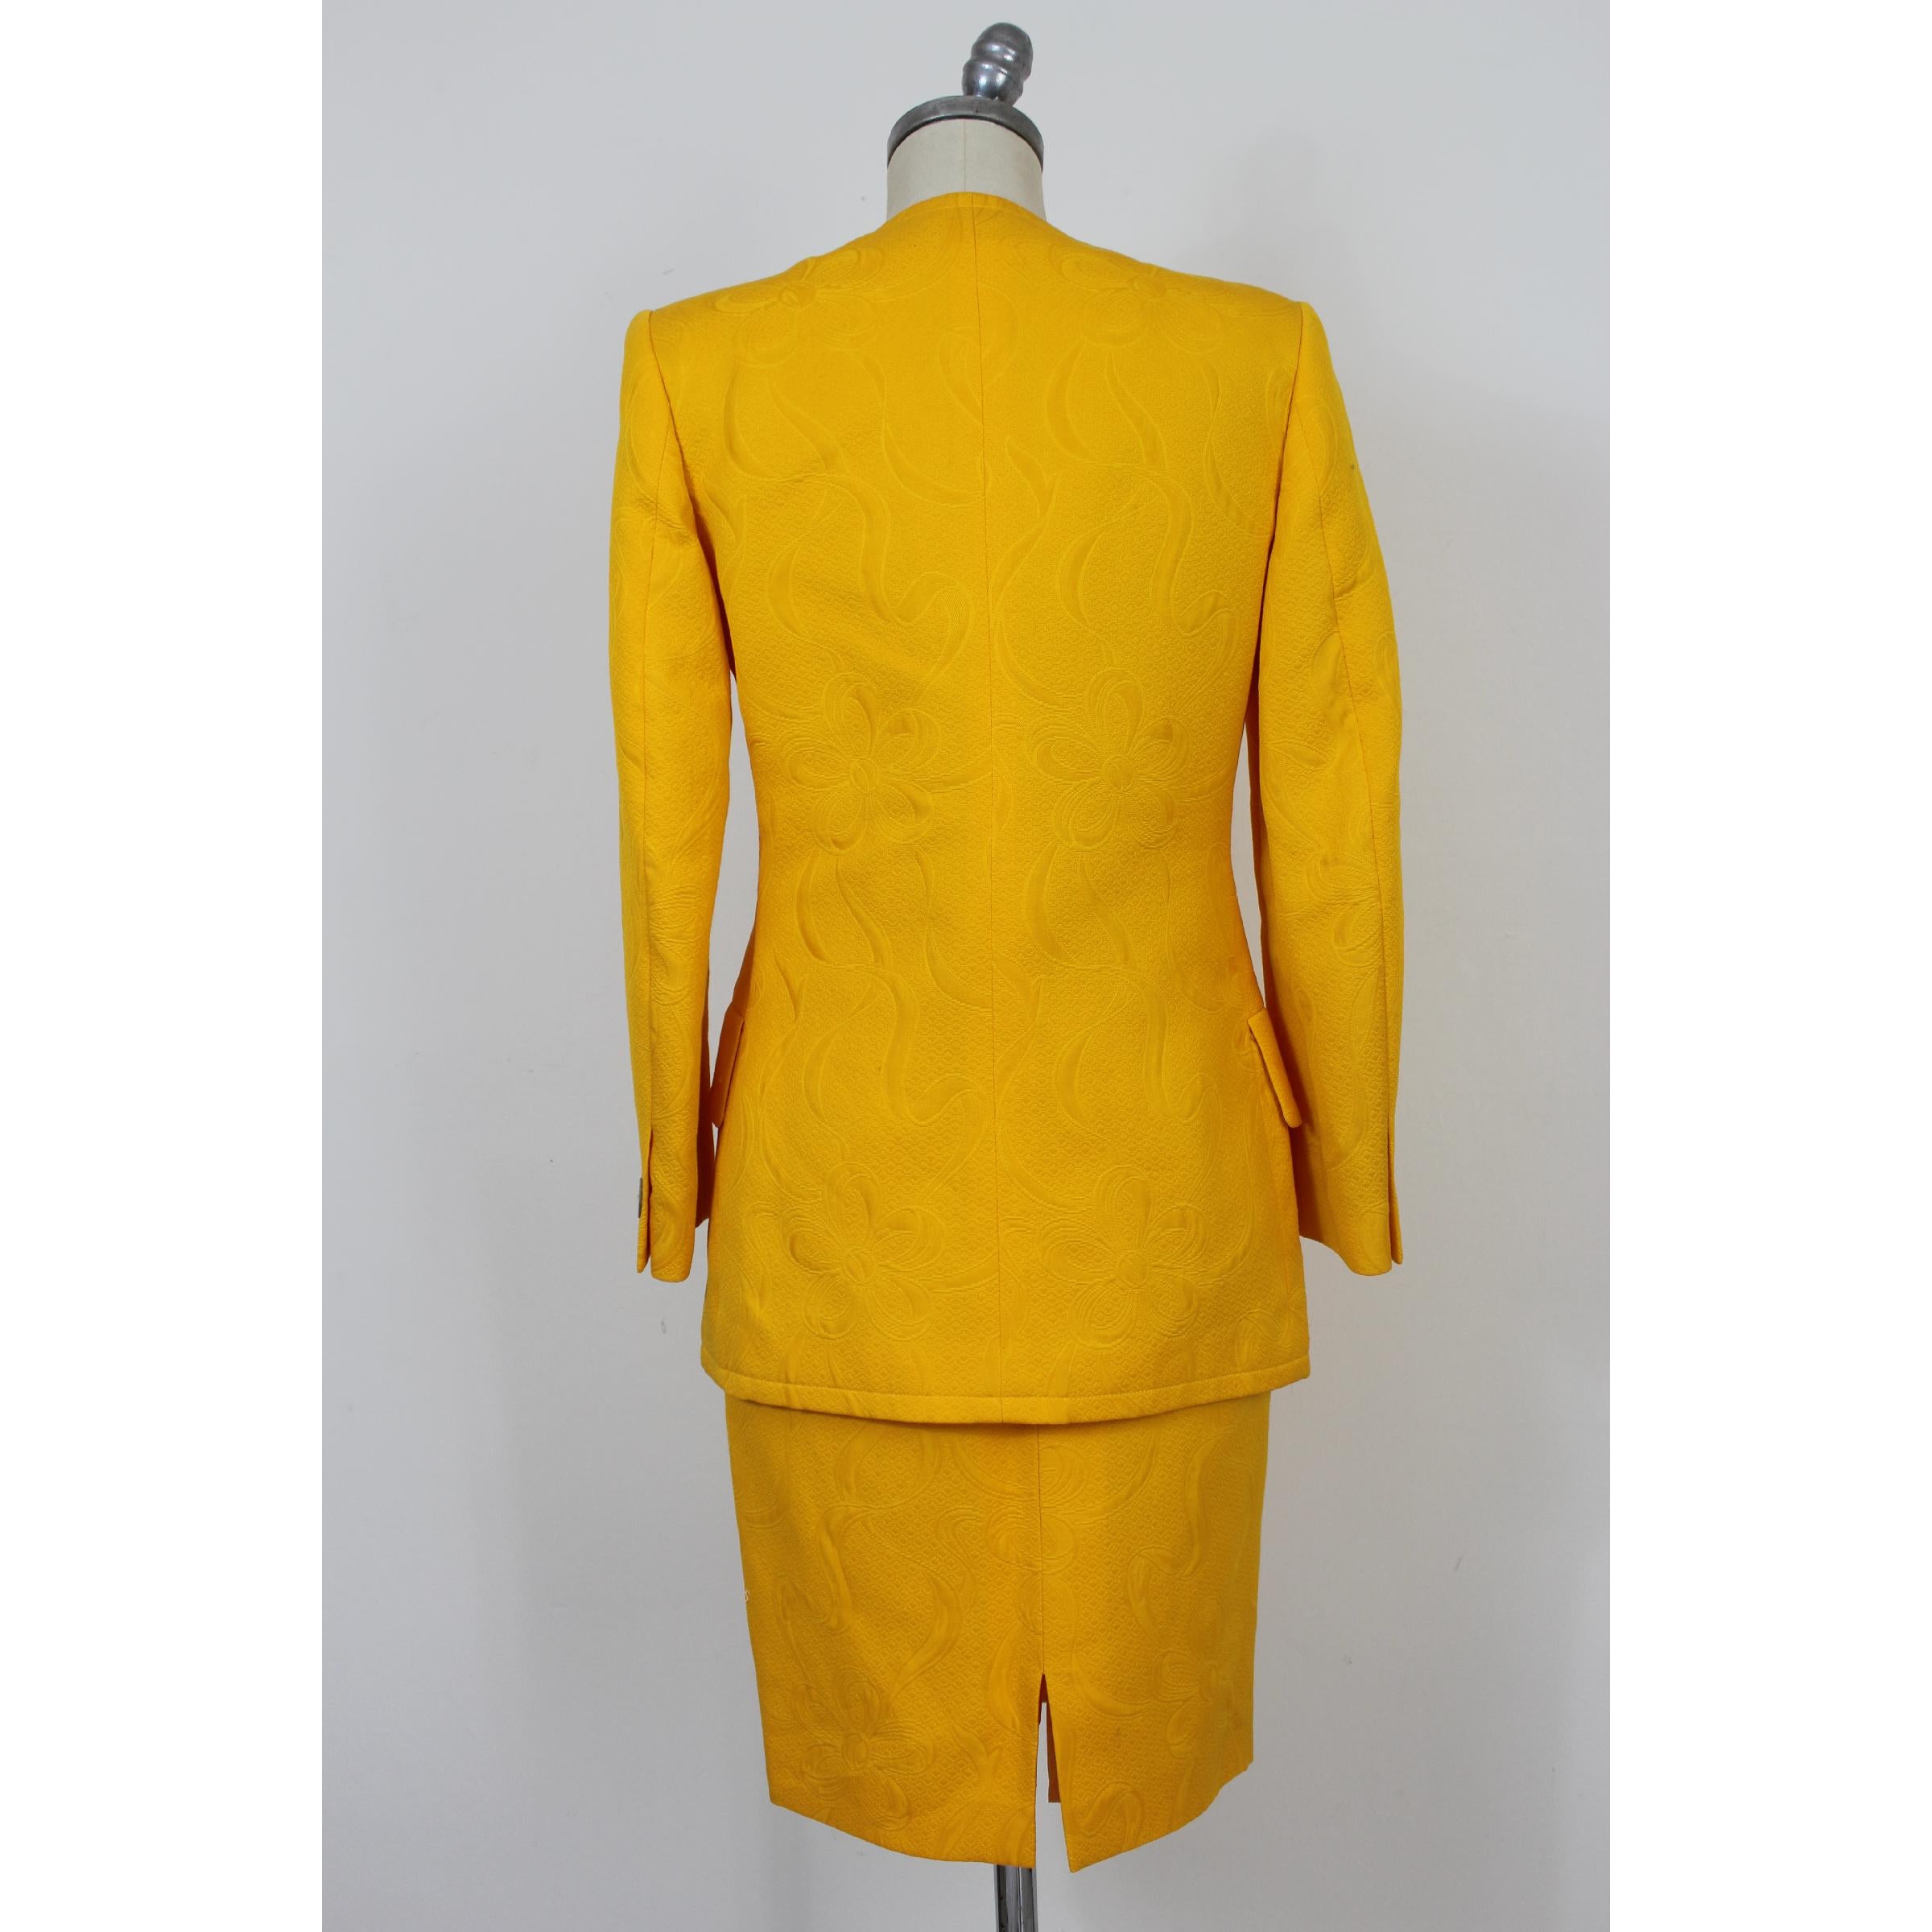 Robe de tailleur jupe vintage des années 70. Veste et jupe, 100% coton, jaune avec des motifs floraux de type damassé. Fabriquées en Italie. Neuf avec étiquette, il y a quelques petites taches dues au temps passé sur la robe.

Taille : 42 It 8 Us 10